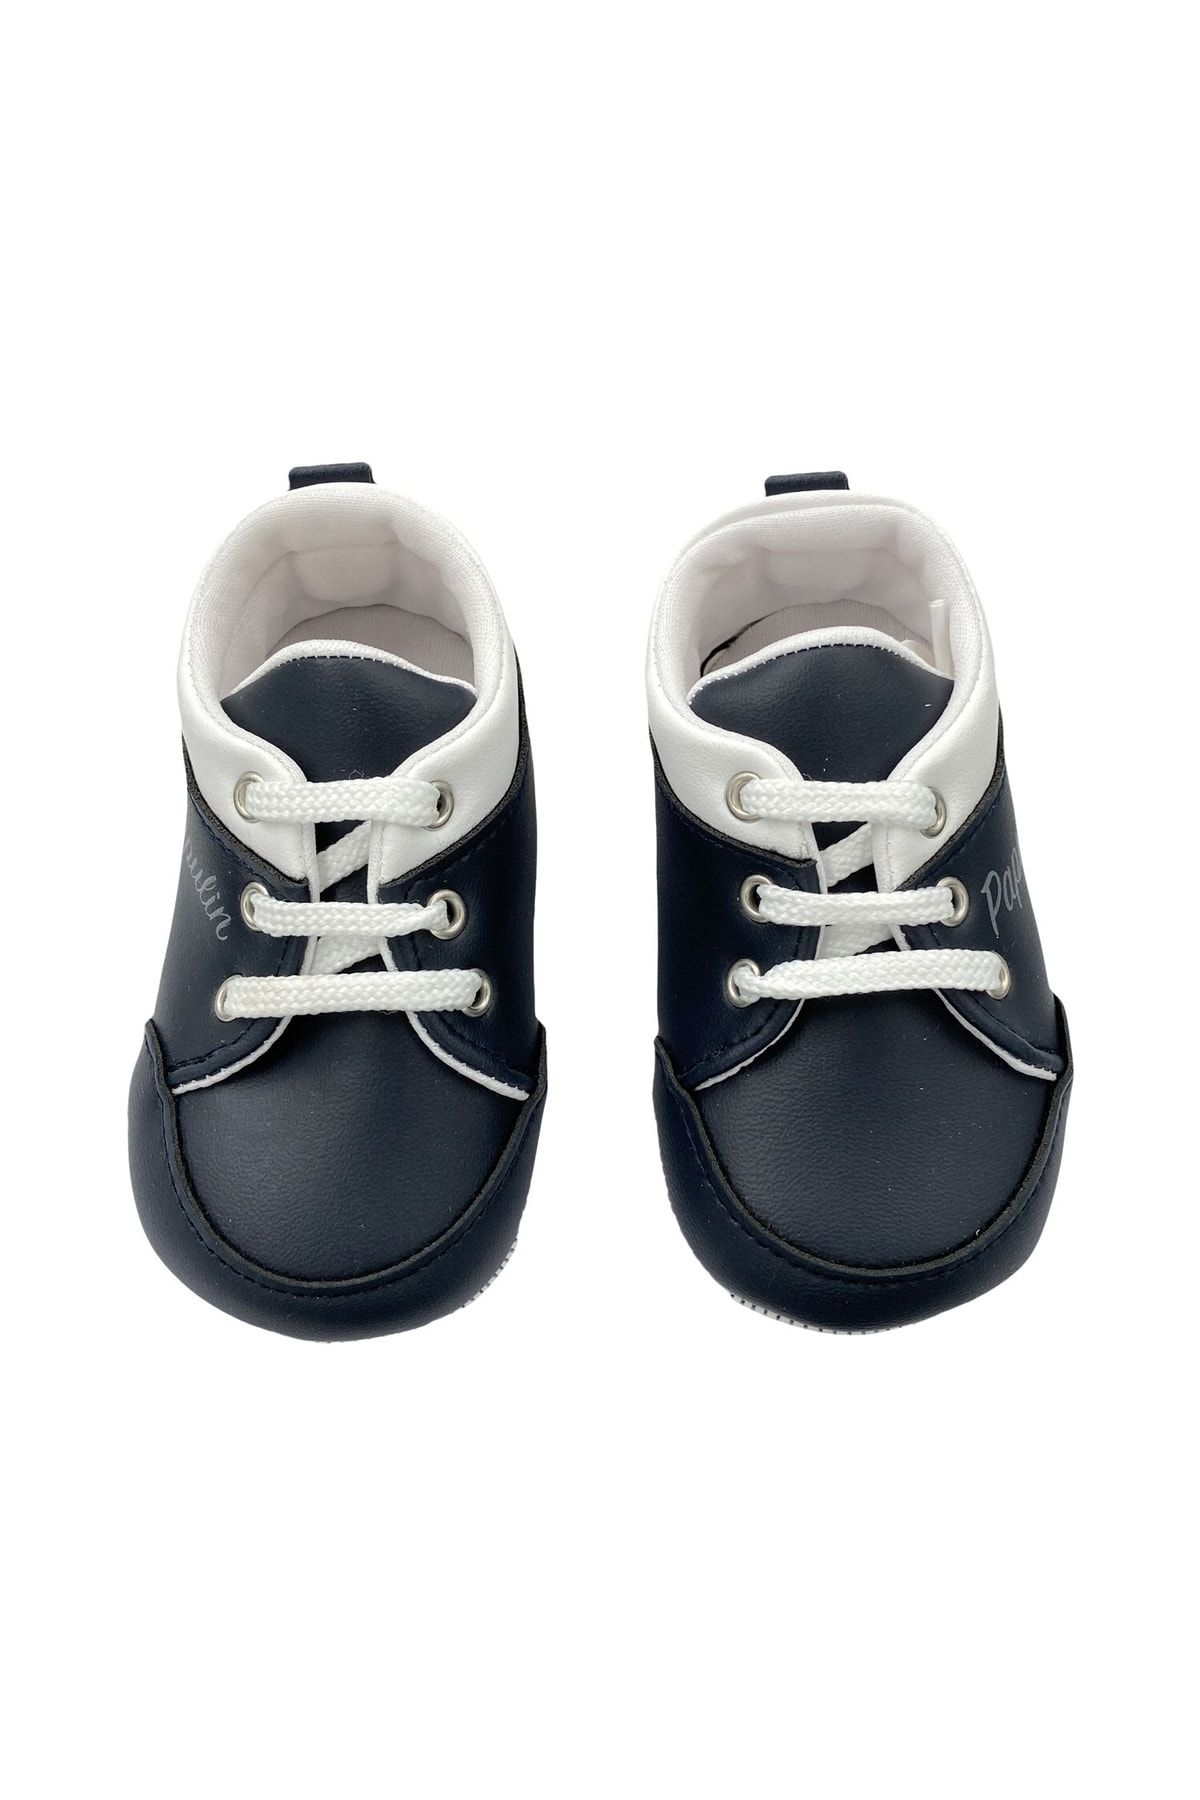 Lüks Bebek Ayakkabısı 2139_0